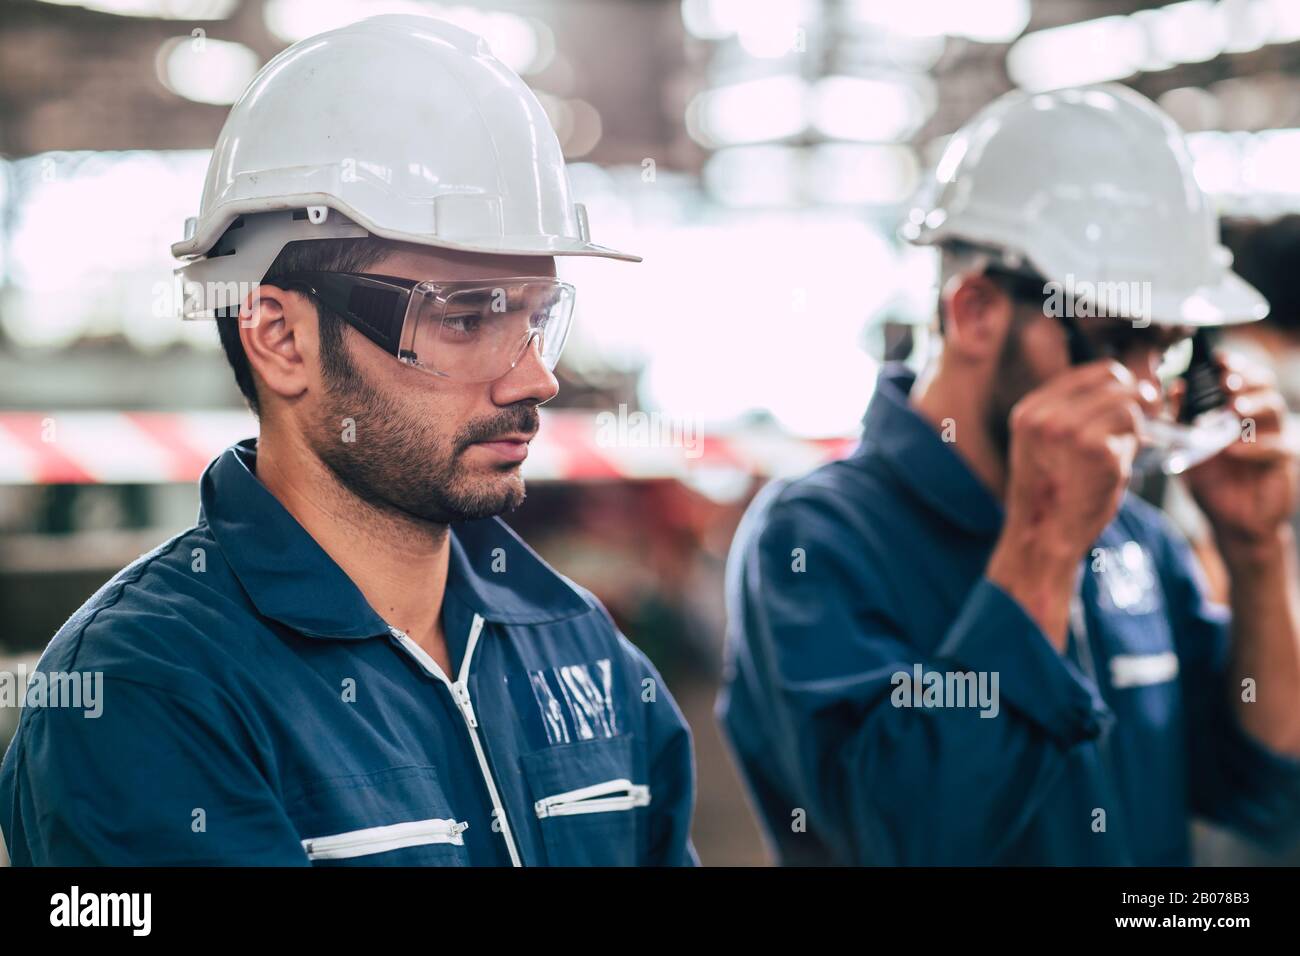 Jefe de ingeniero, jefe de trabajador retrato auto-confianza y aspecto profesional con gafas de seguridad y casco blanco. Foto de stock